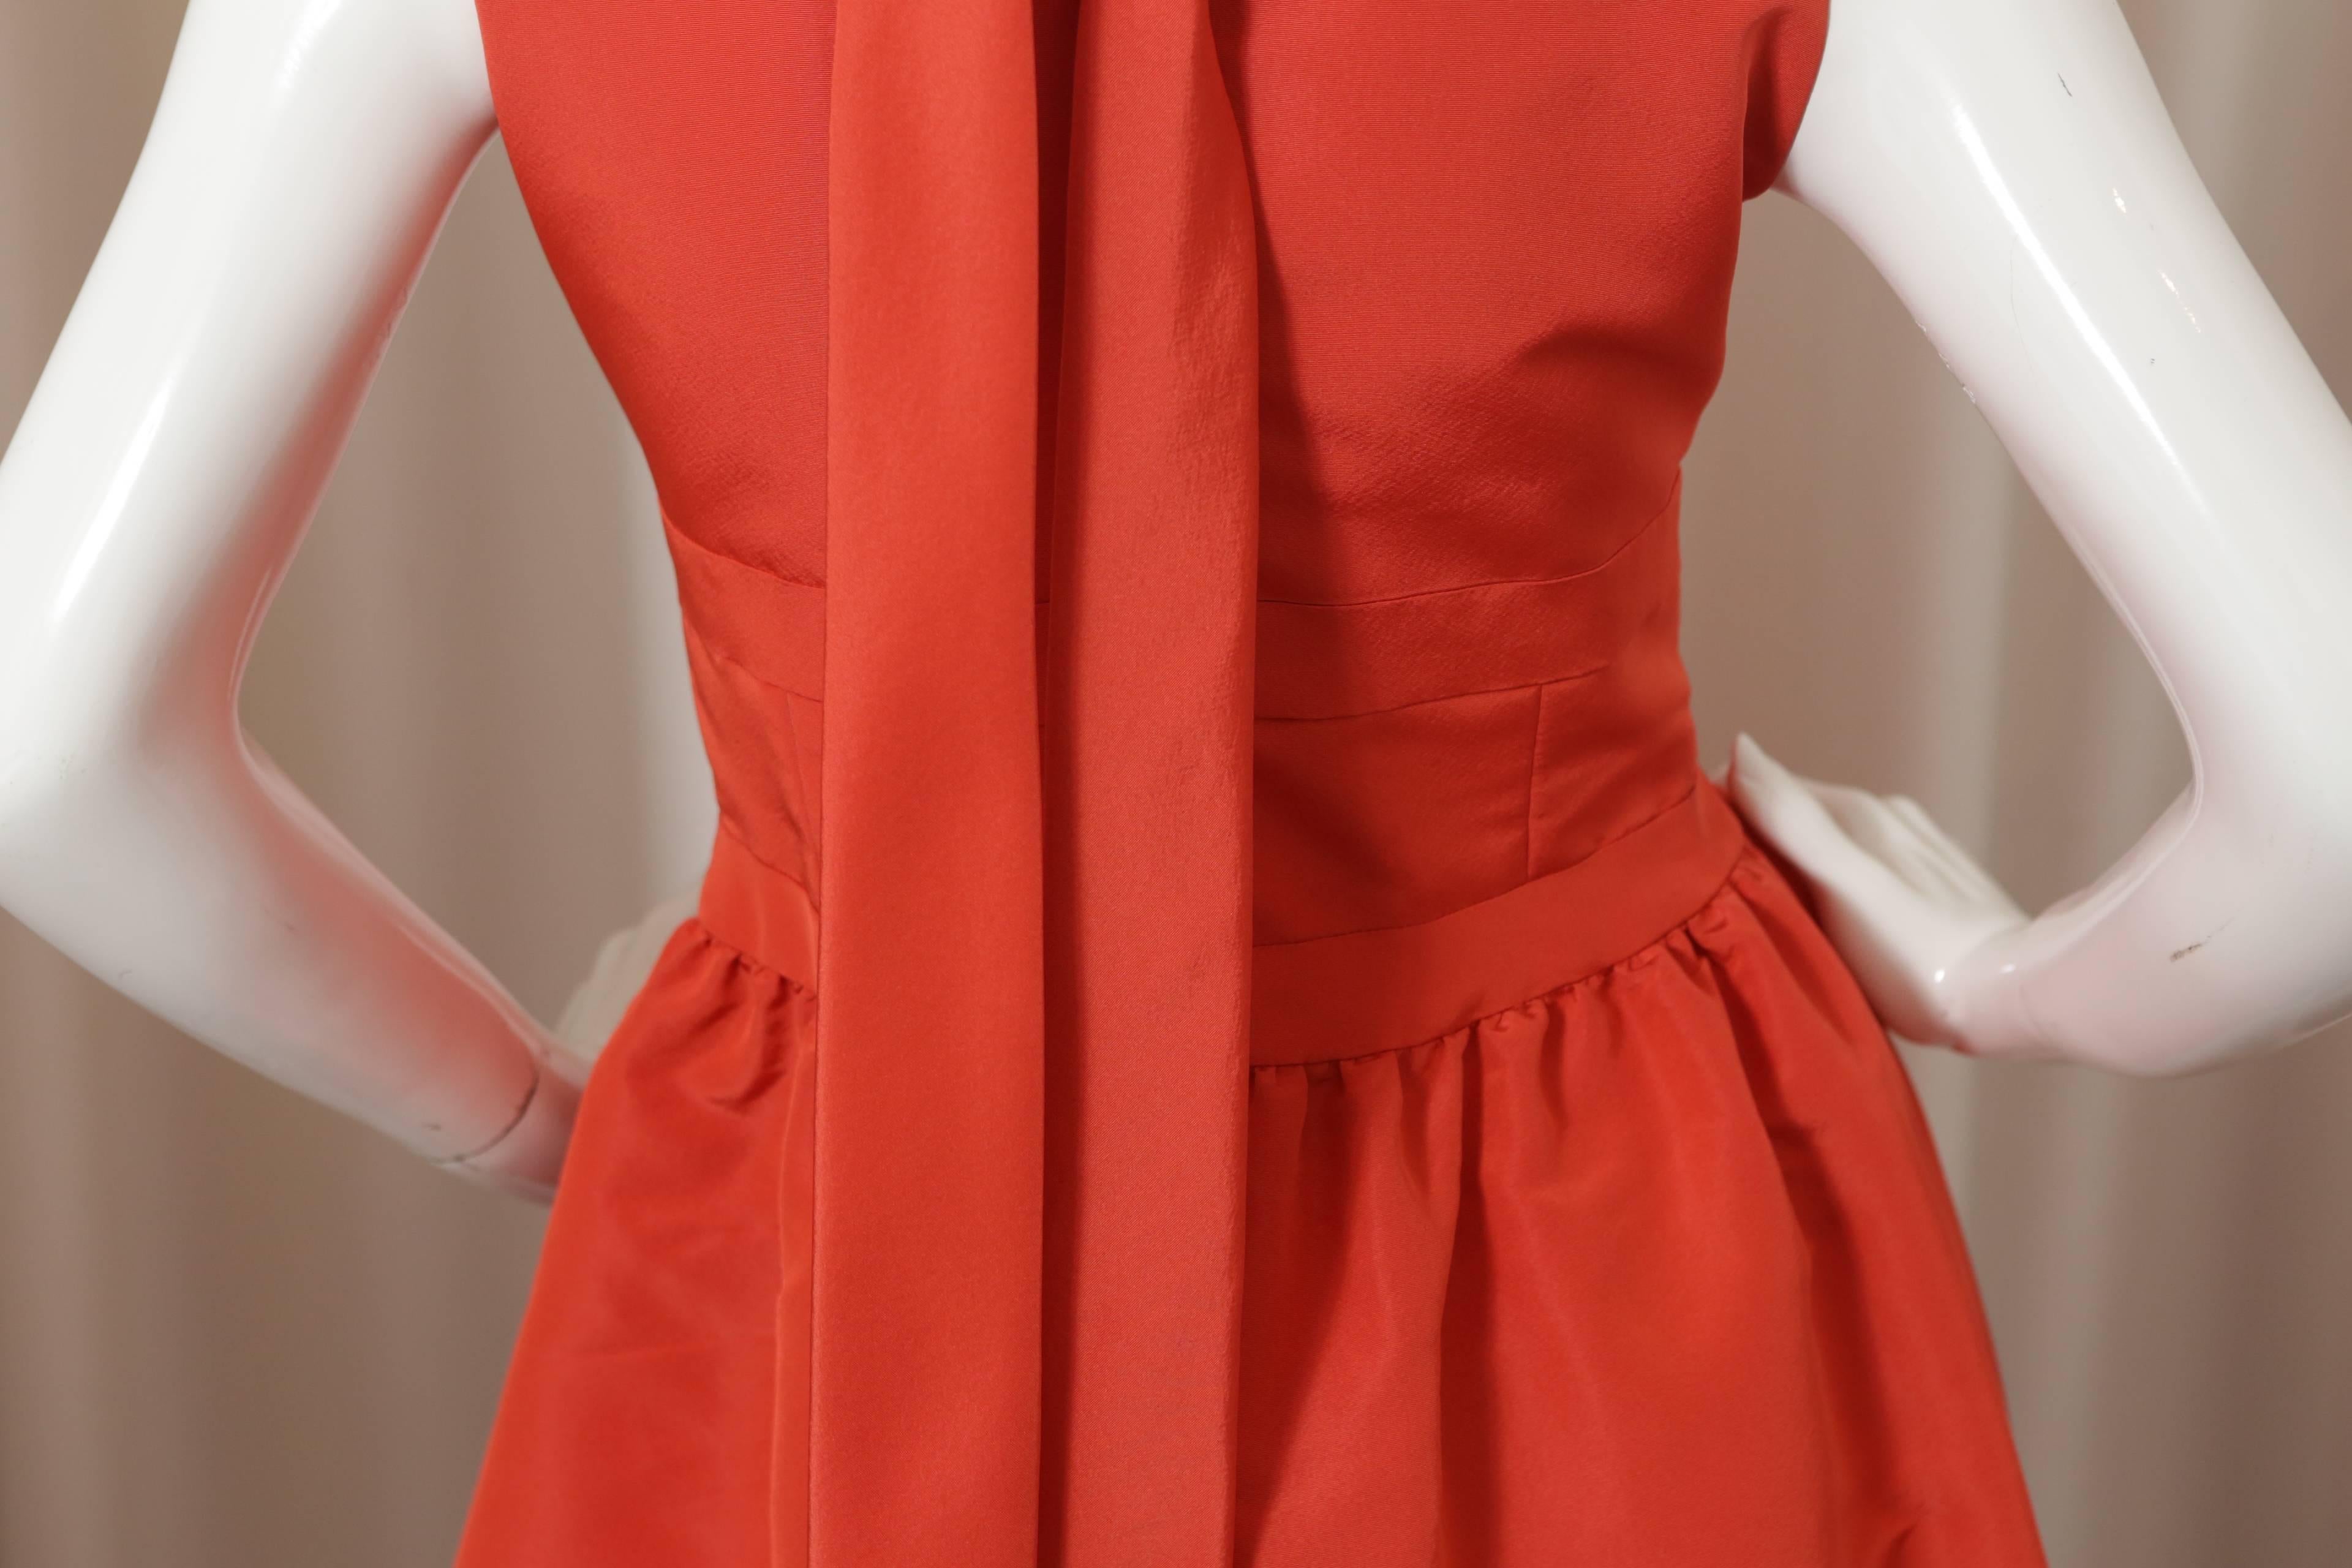 Women's Oscar de la Renta Orange Cocktail Dress W/ Back Tie